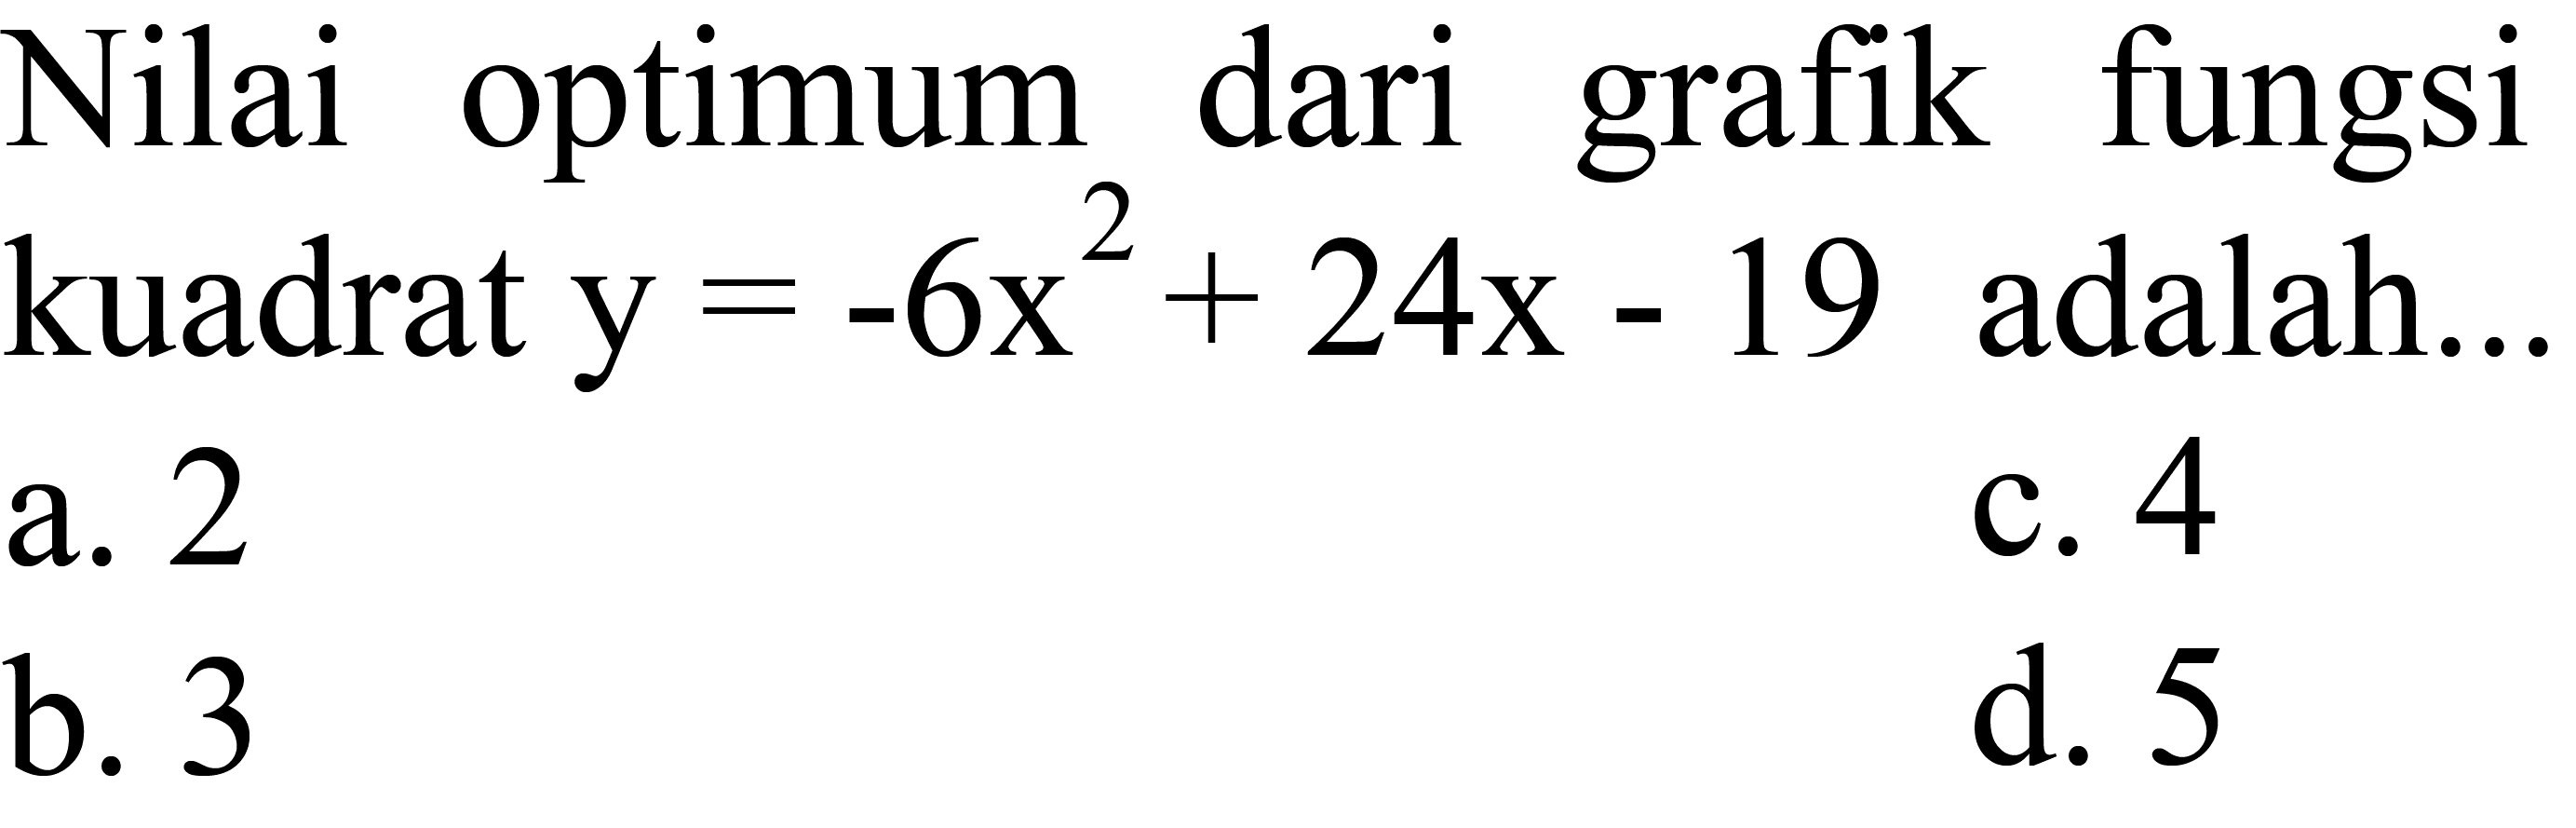 Nilai optimum dari grafik fungsi kuadrat  y=-6 x^(2)+24 x-19  adalah...
a. 2
c. 4
b. 3
d. 5